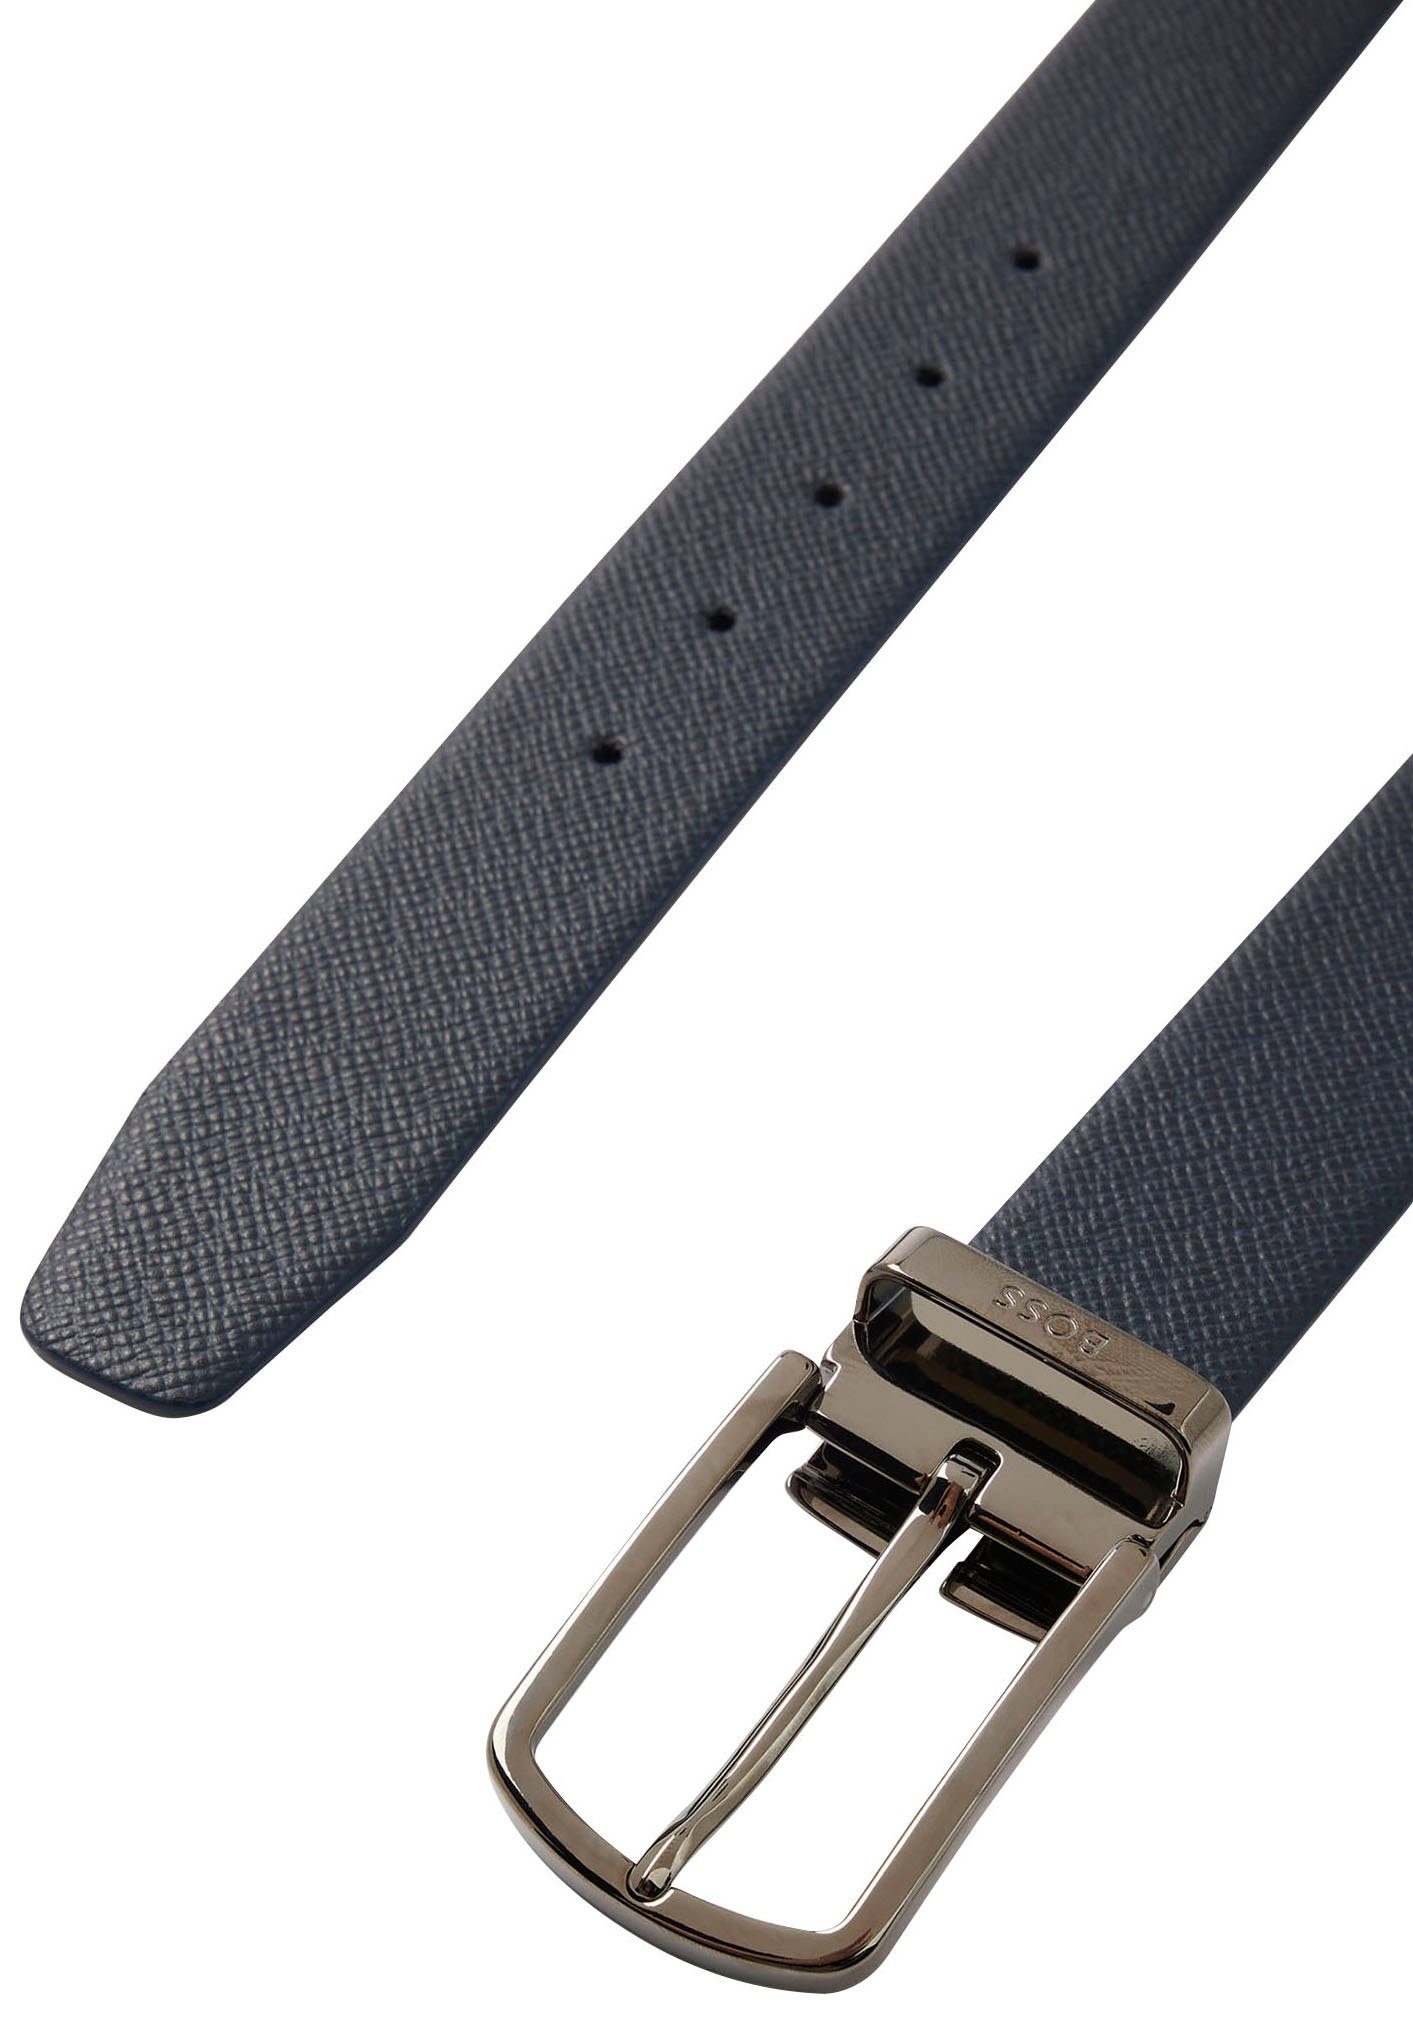 BOSS Ledergürtel in Onesize Größe, mit Metall-Schnalle dezenter dunkelblau und Logo-Schlaufe